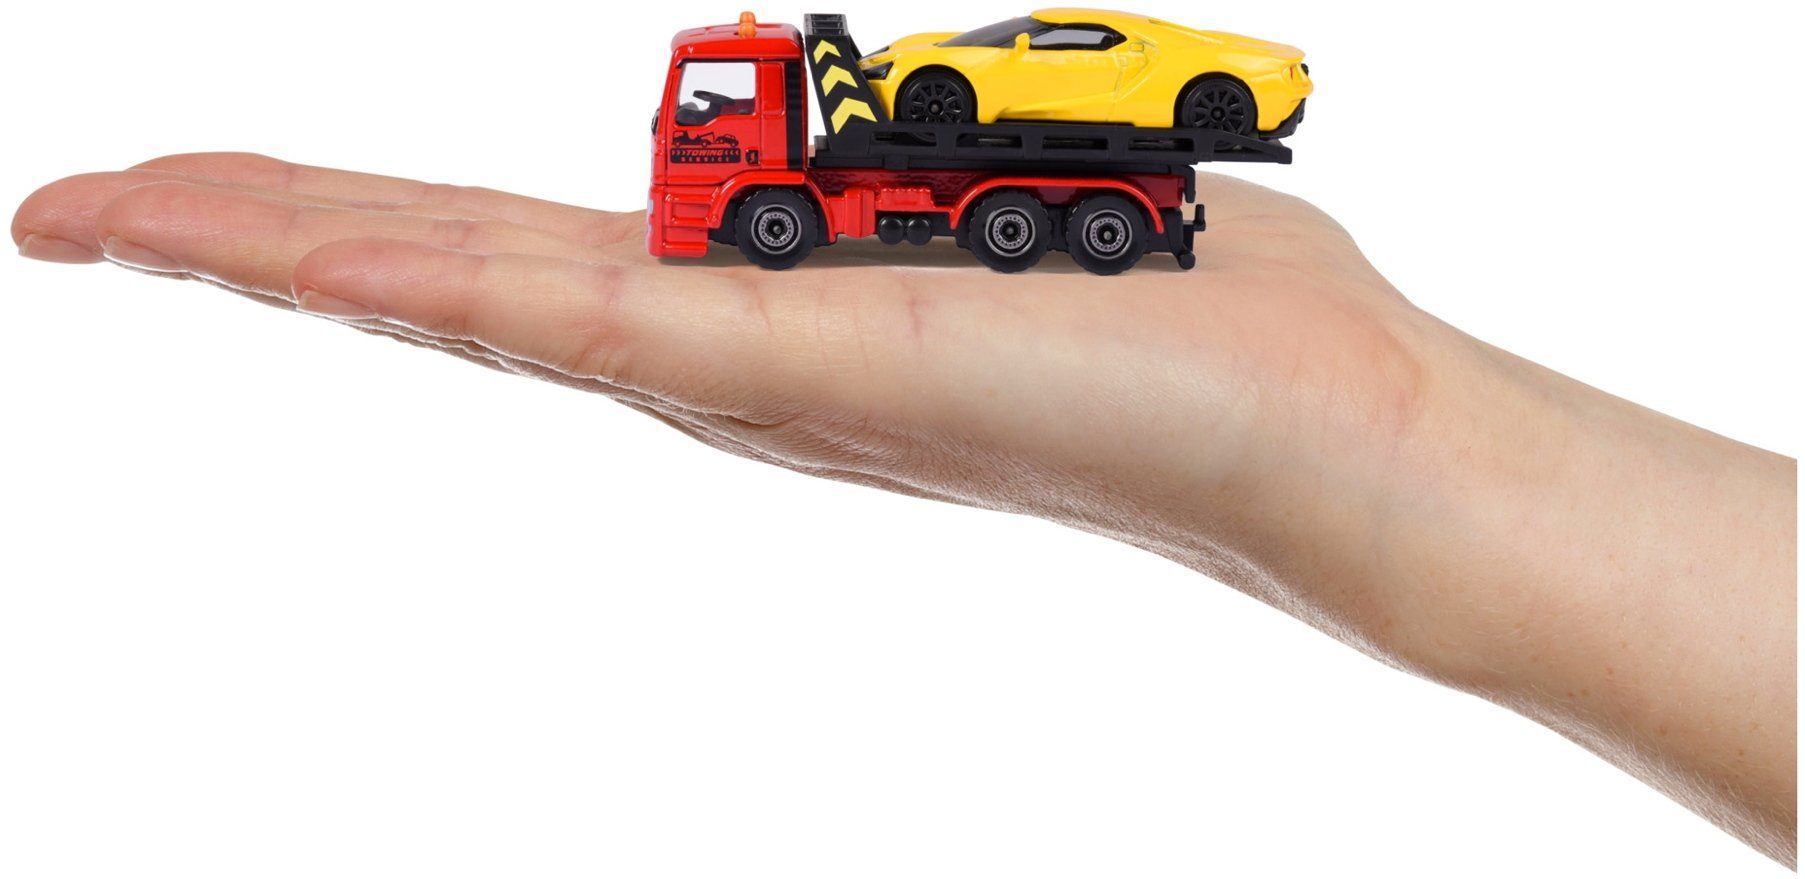 Tow mit majORETTE gelb GT MAN Truck Ford Spielzeug-Abschlepper 212053154Q05 Abschleppwagen